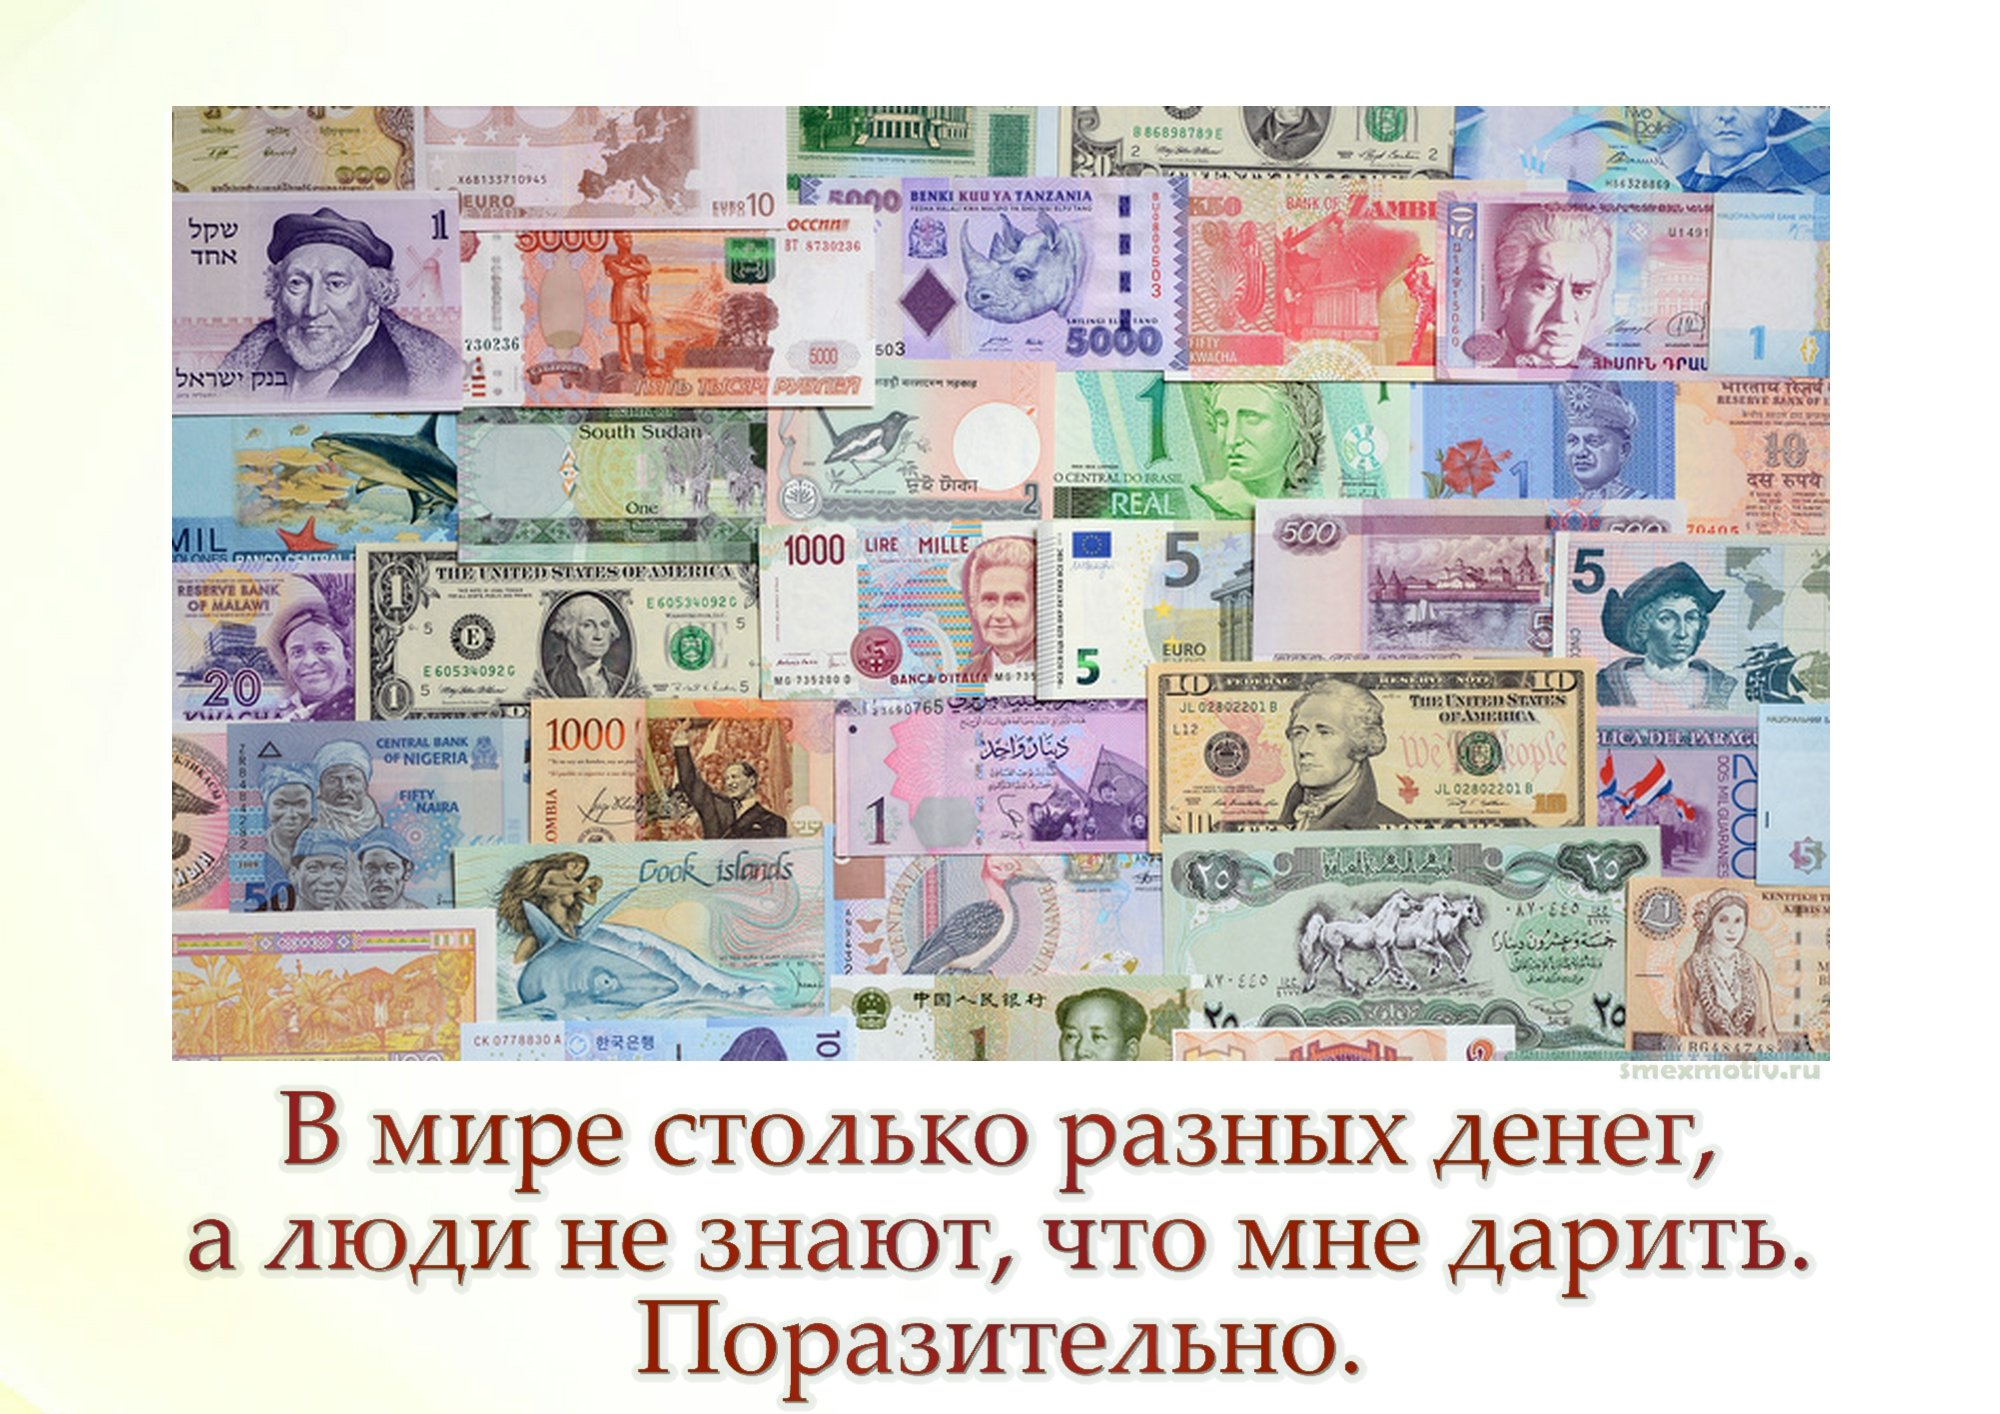 Рубли в разных странах